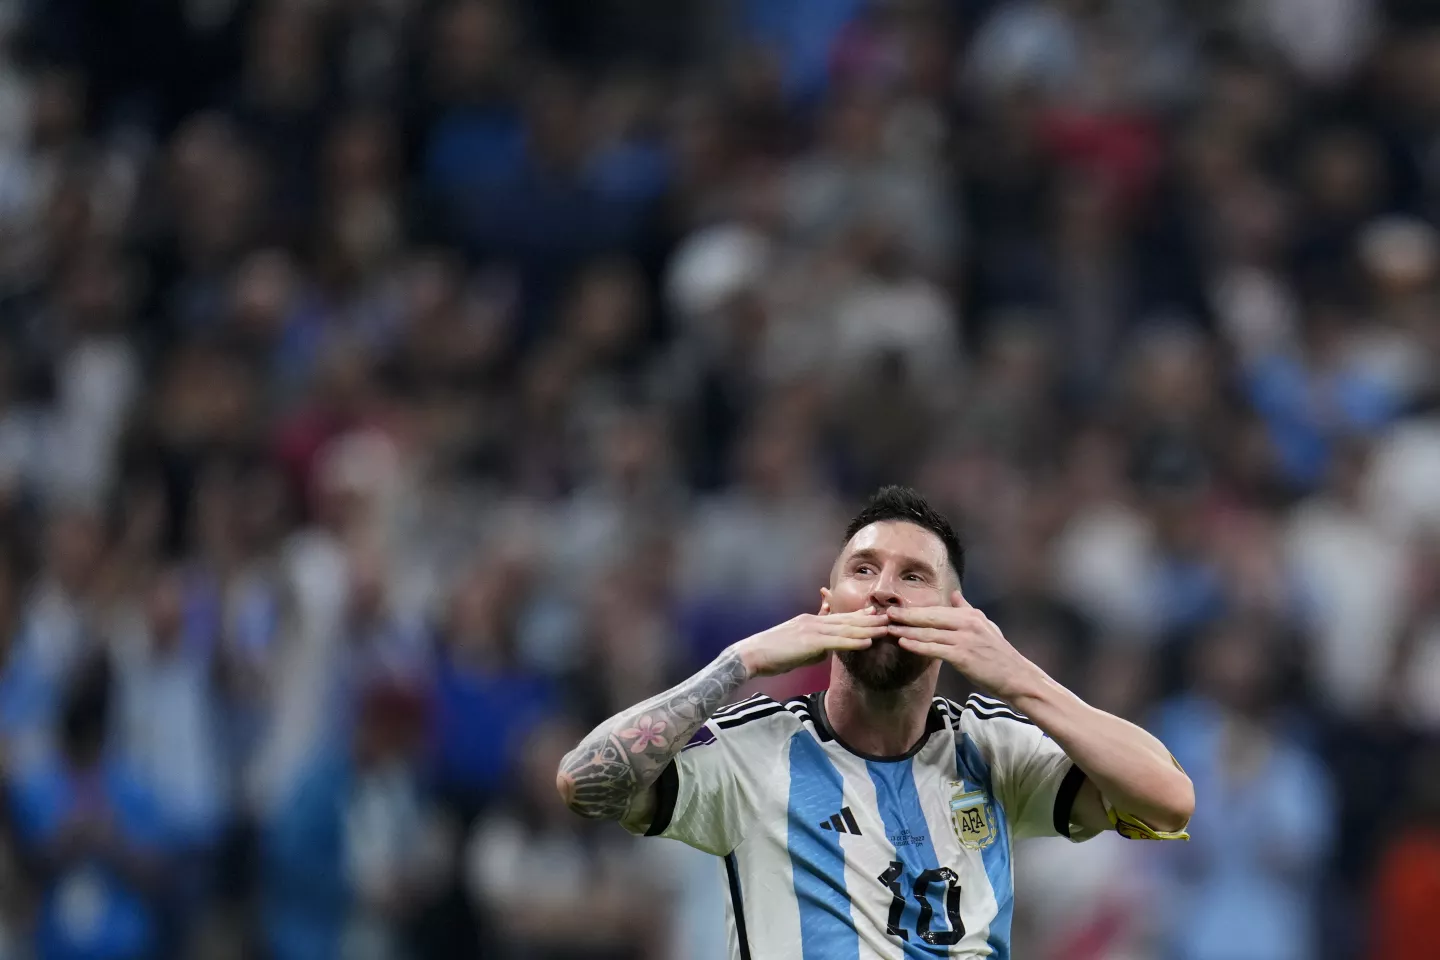 iBoluuudos! Con goles de Messi y Di María, Argentina vence 2 a 0 a Francia el final del primer tiempo